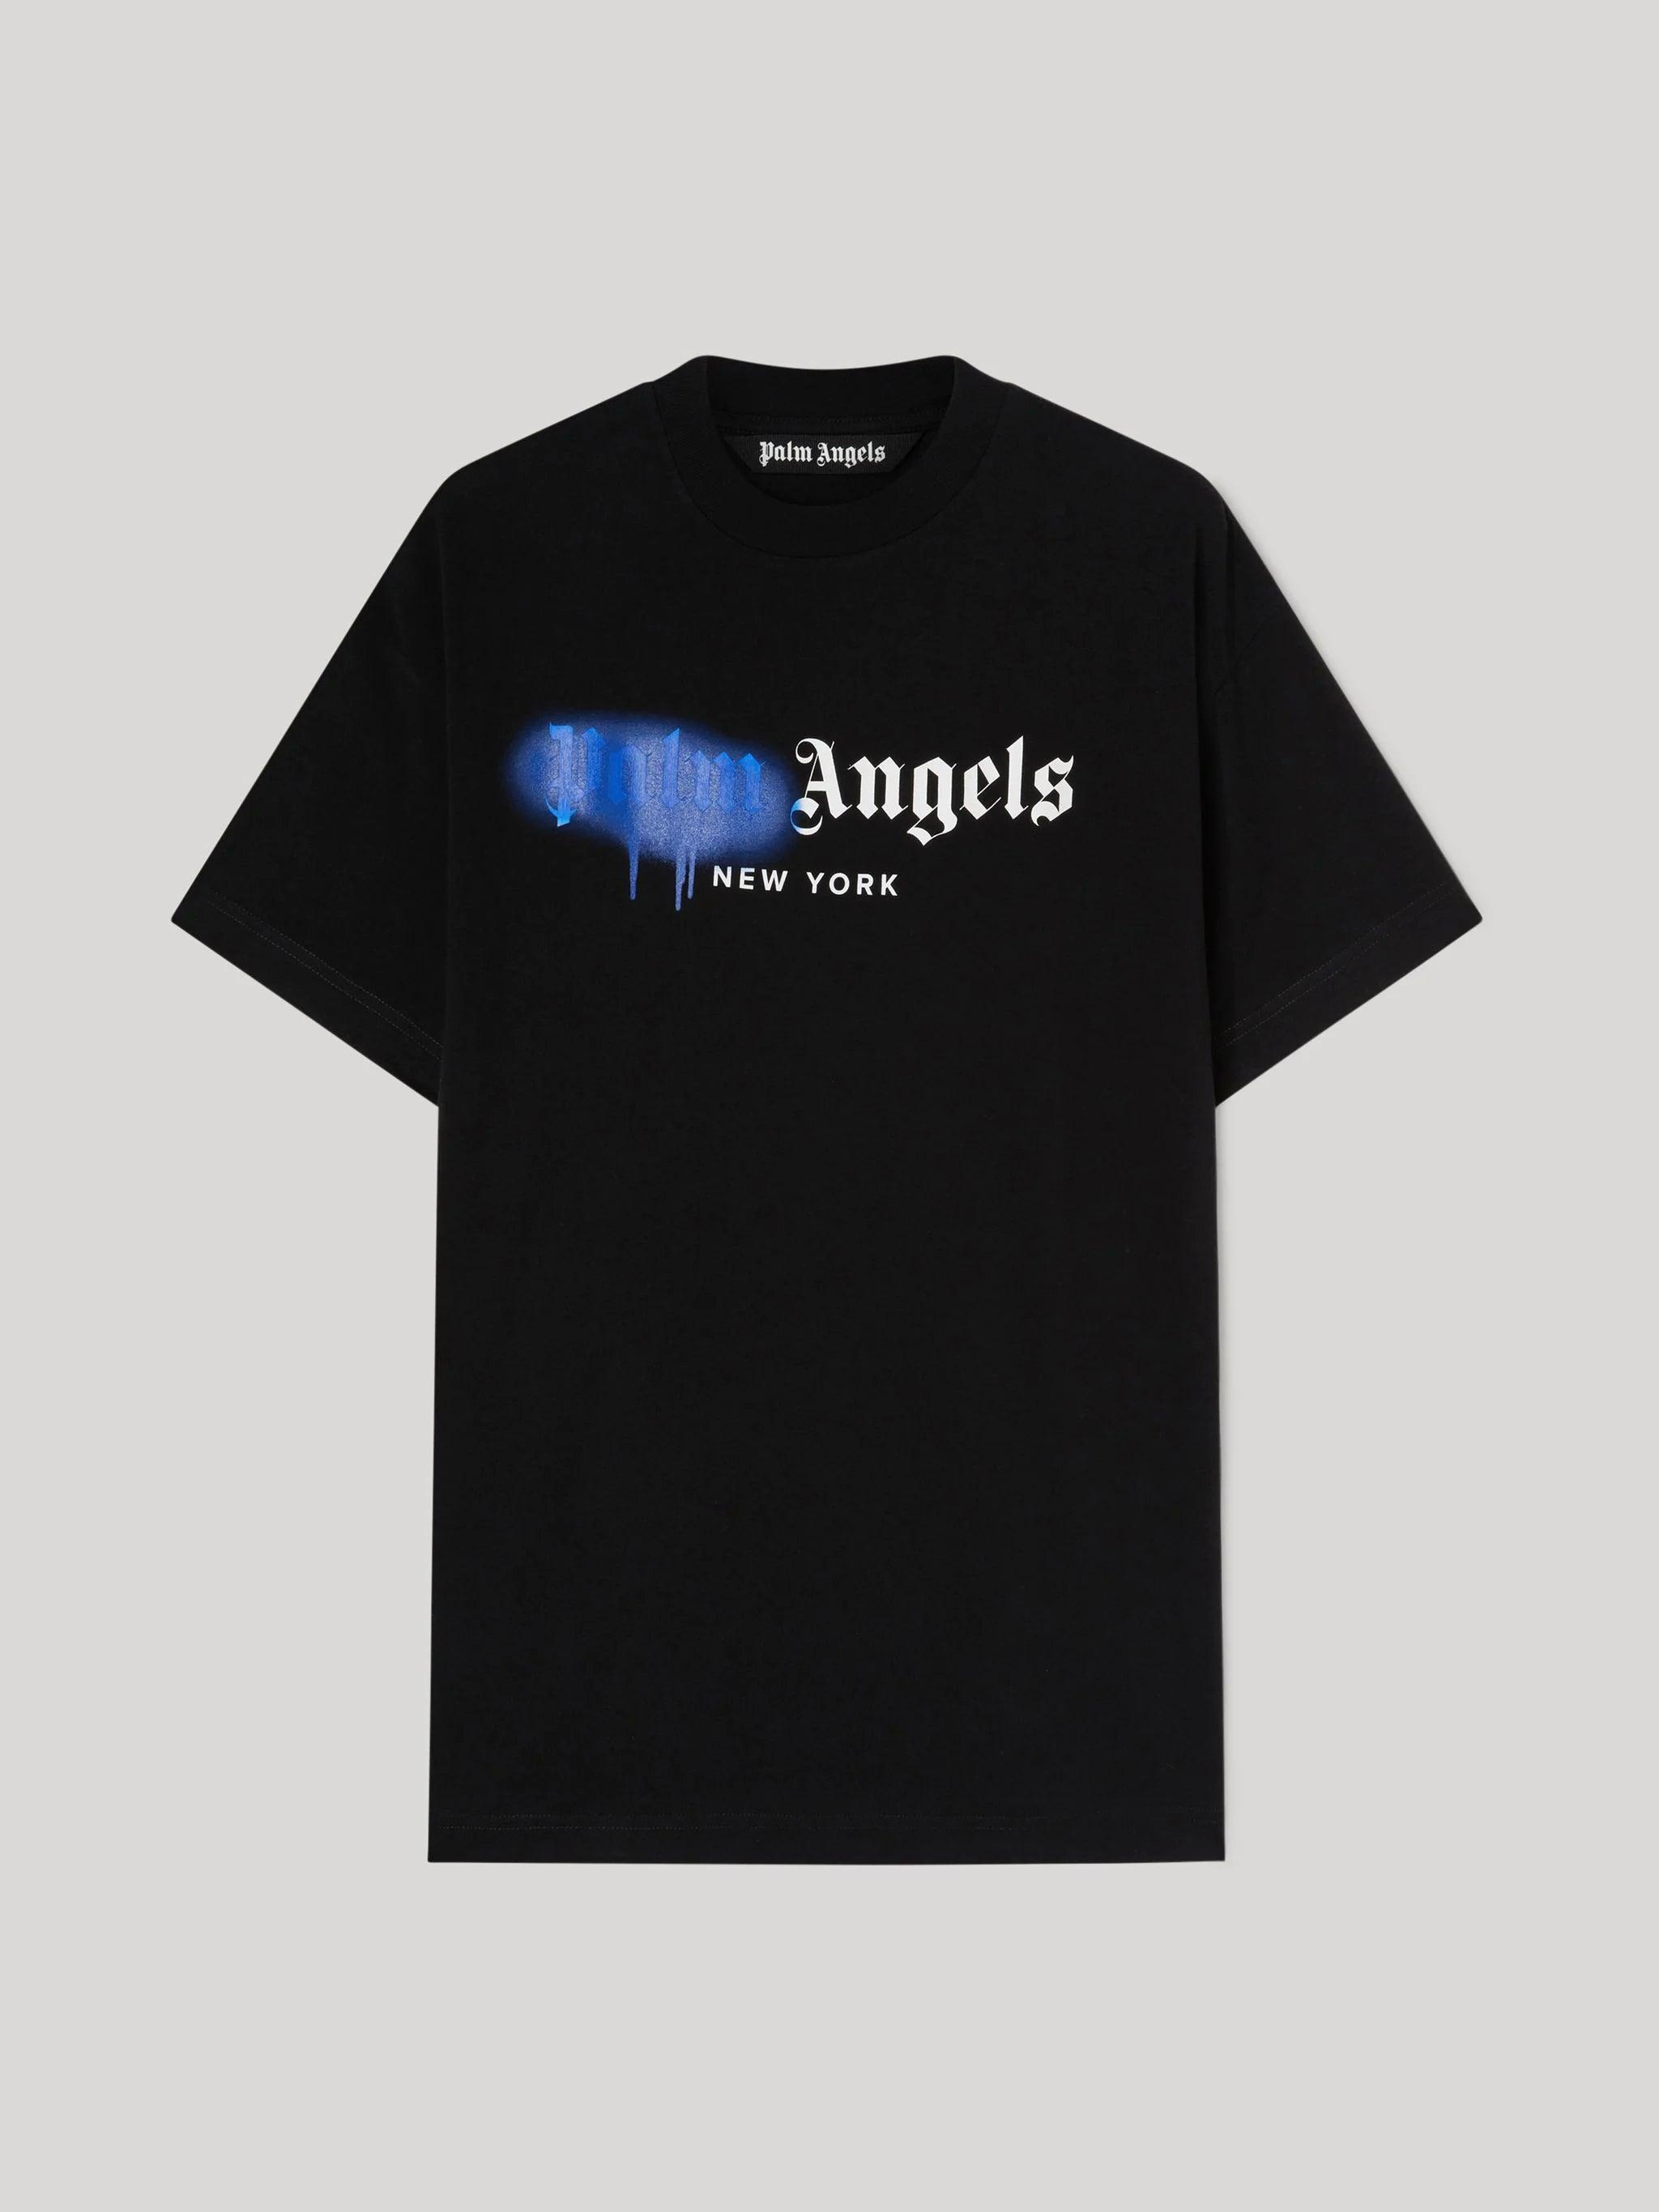 https://sneakcenter.com/cdn/shop/files/palm-angels-black-blue-new-york-t-shirt-sneakcenter-1-36746592223499.webp?v=1701594881